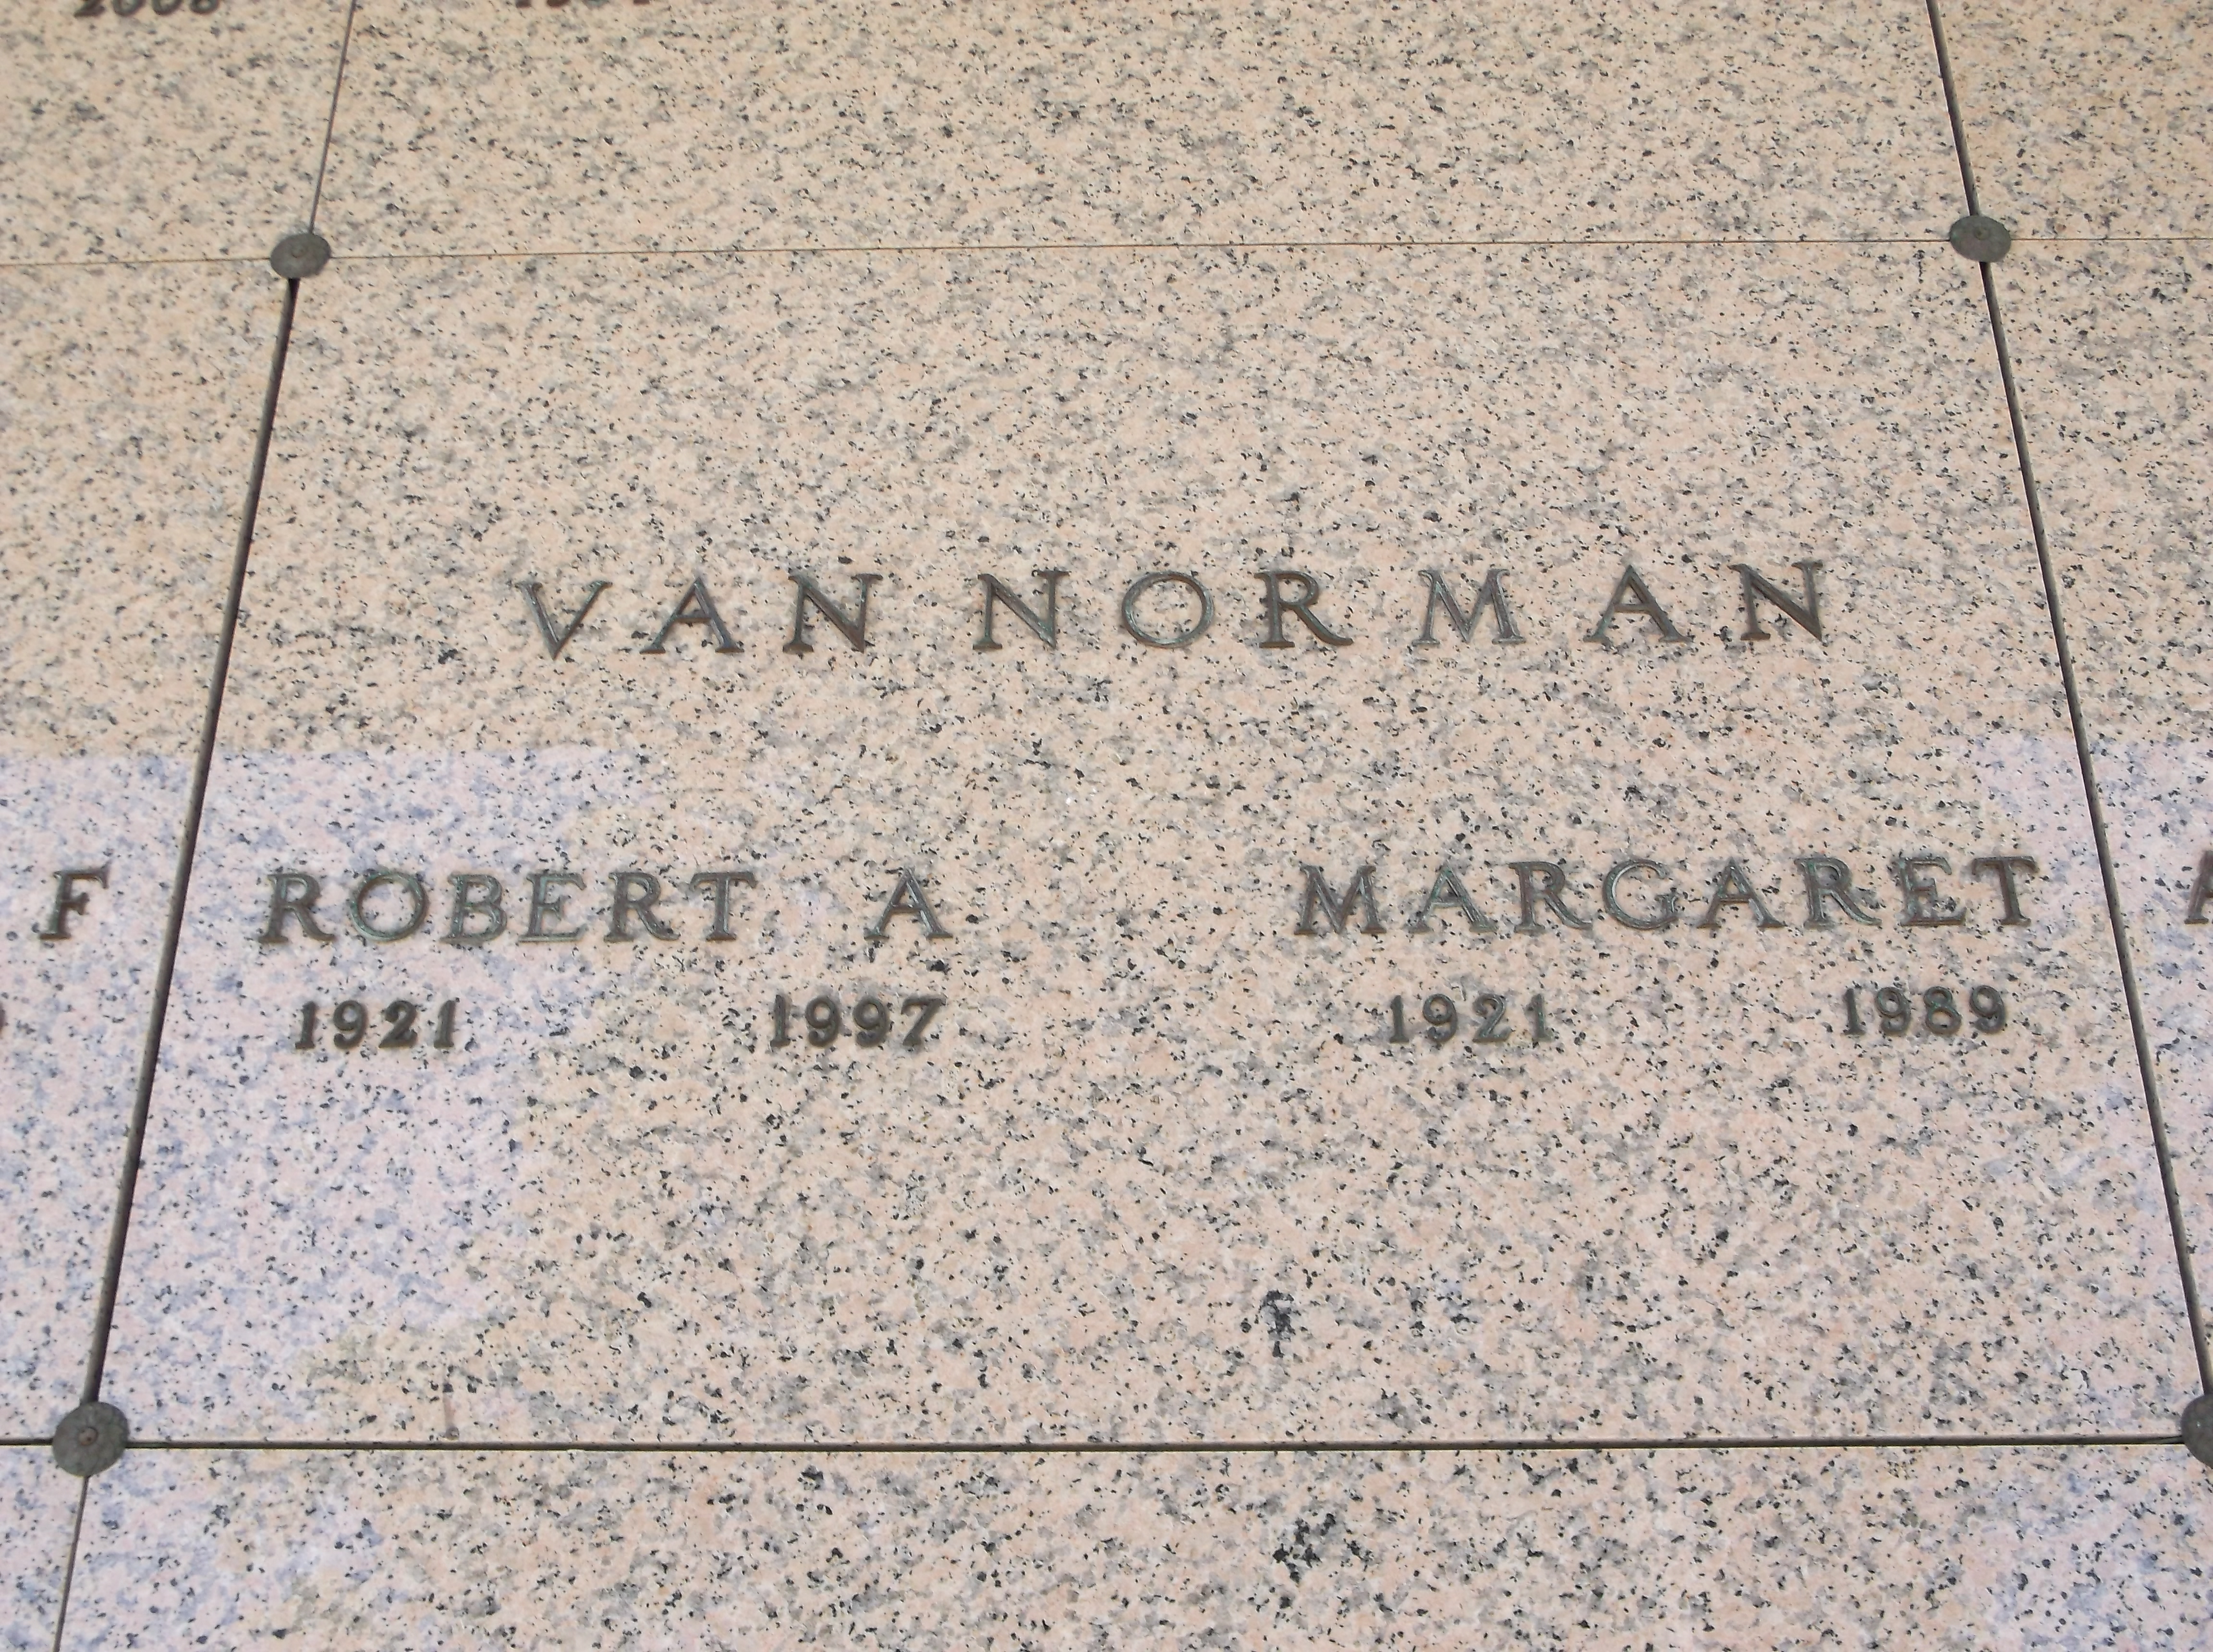 Margaret Van Norman